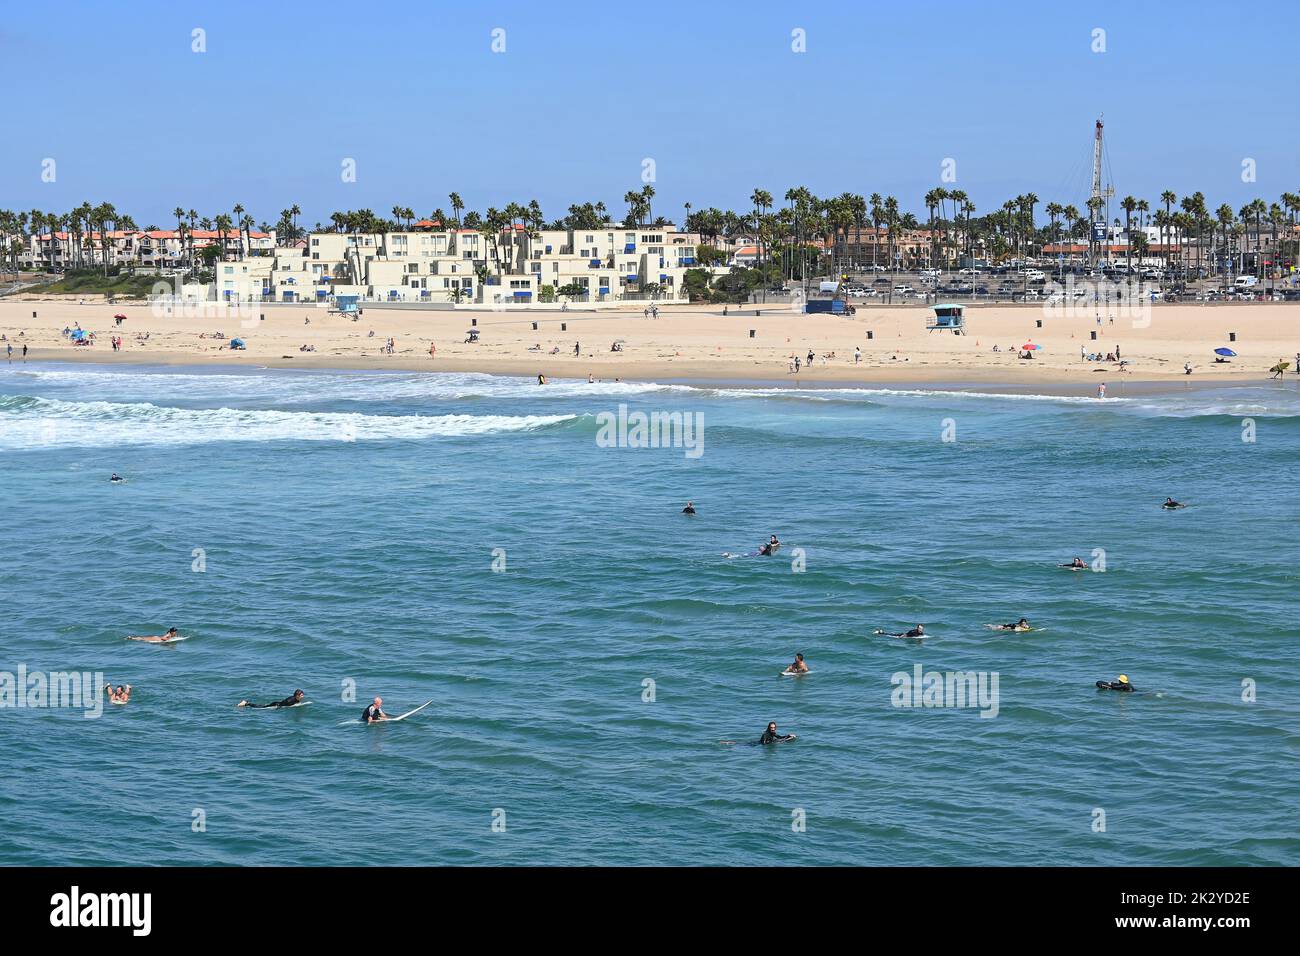 HUNTINGTON BEACH, KALIFORNIEN, 19. SEPTEMBER 2022: Eine große Gruppe von Surfern auf ihren Brettern vor dem Pier in Huntington Beach während des International Surfing Stockfoto